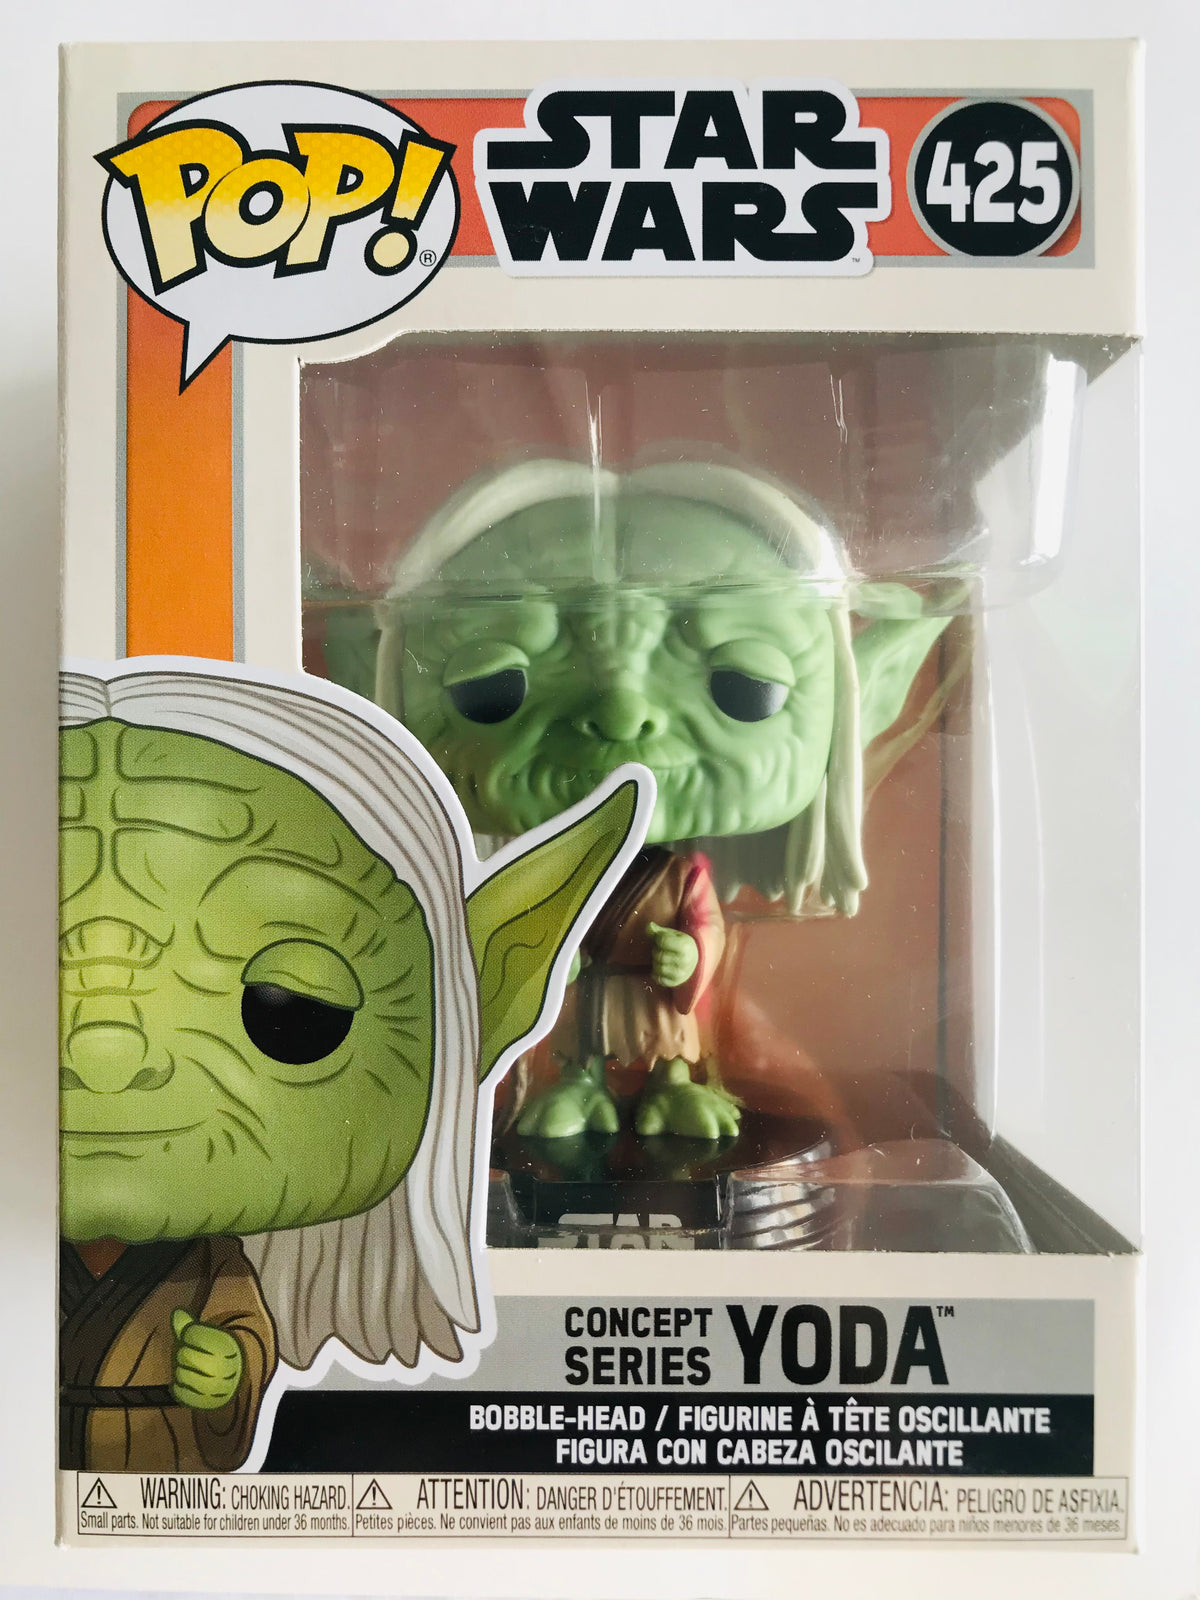 Concept Series Yoda (425)